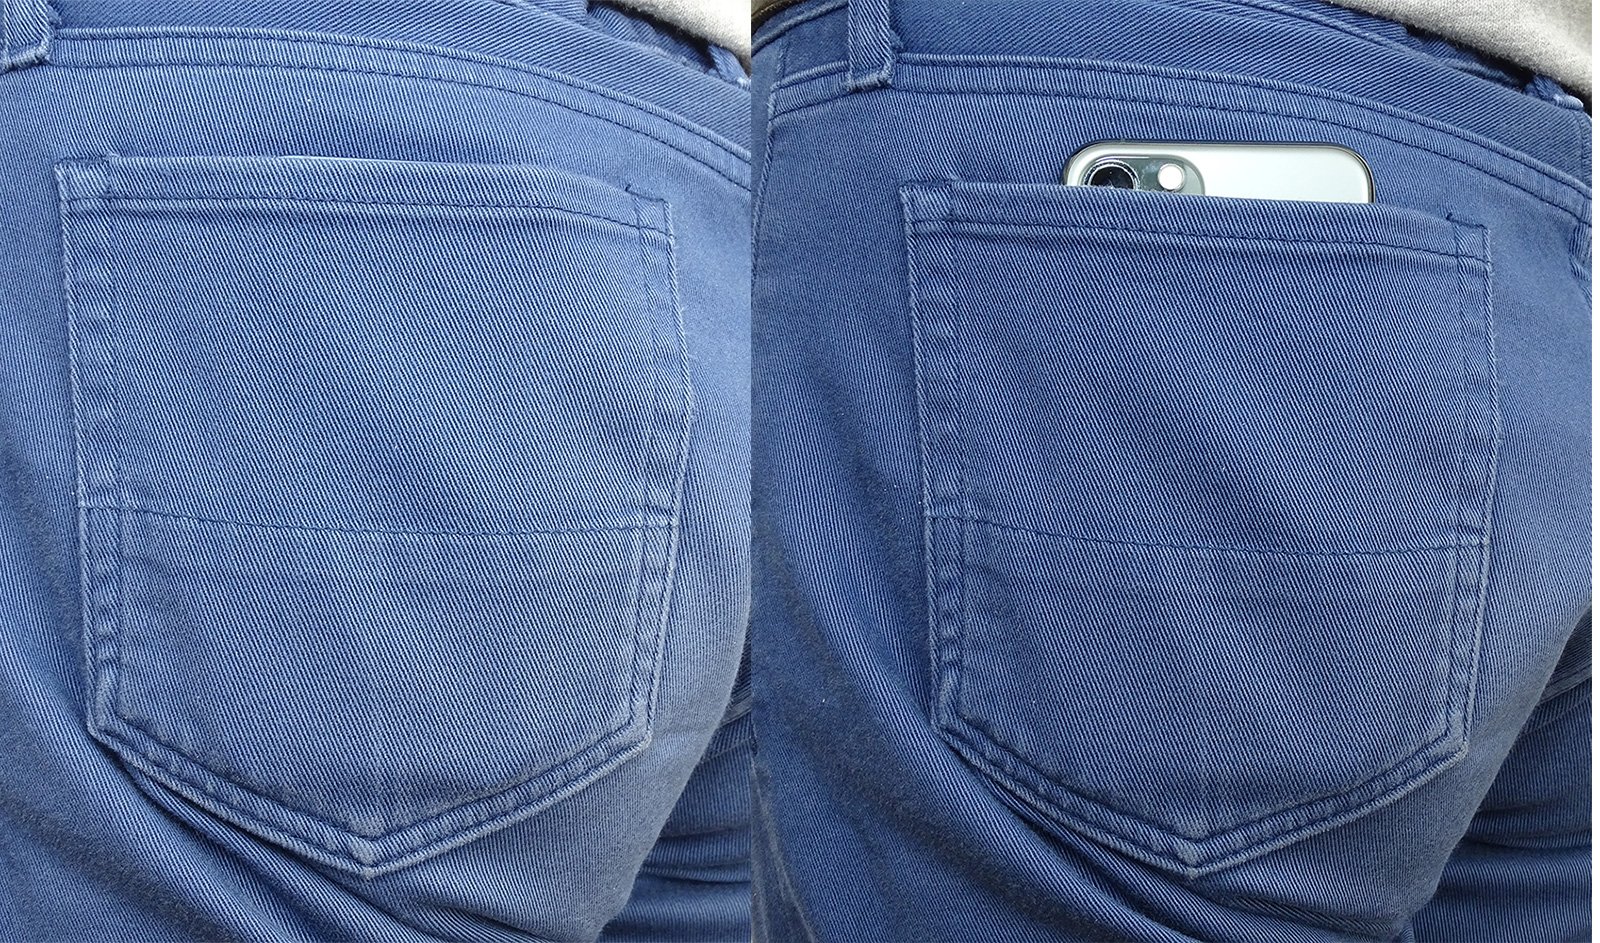 左側の写真はポケットにiPhone 12 miniが入っている。男性のズボンのポケットに無理なく収まる。右側の写真のポケットにはiPhone12 Proが入っている